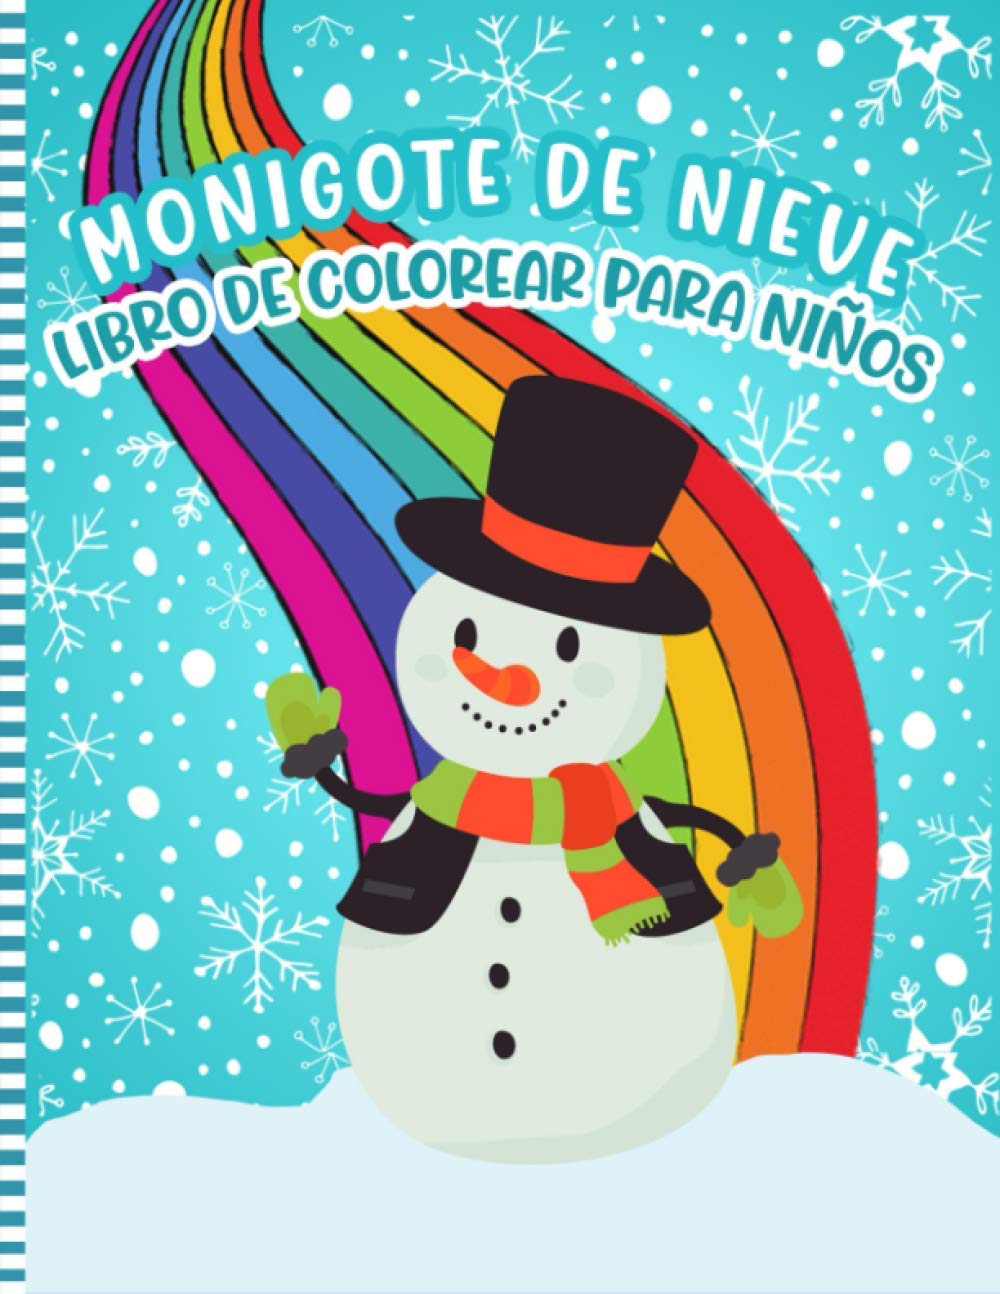 Libro: Monigote De Nieve - Libro De Colorear Para Niños por NIEVOSP Press